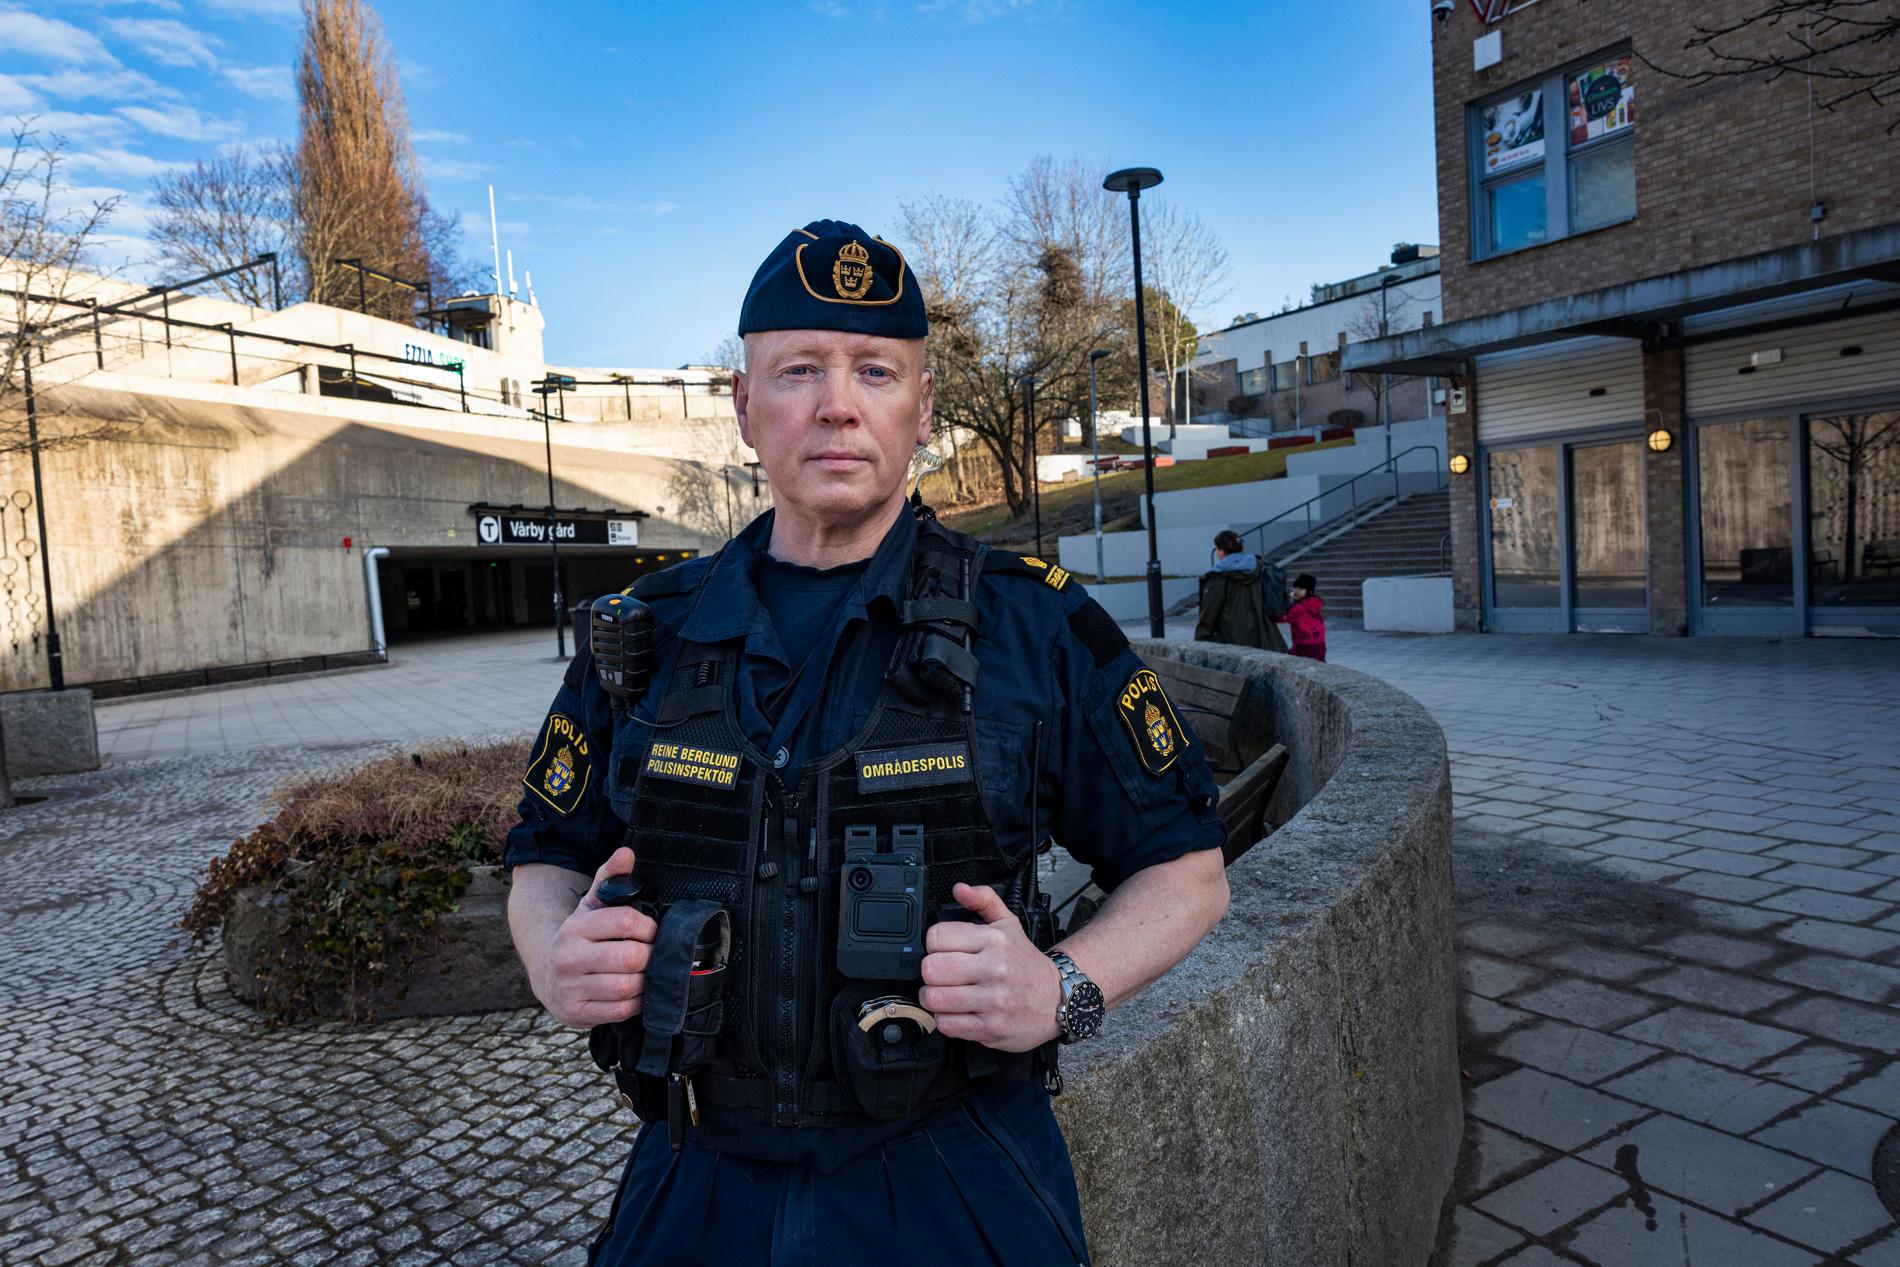 Det finns musik som inte är ”tillåten” av gängen i Vårby, enligt polisen Reine Berglund. 